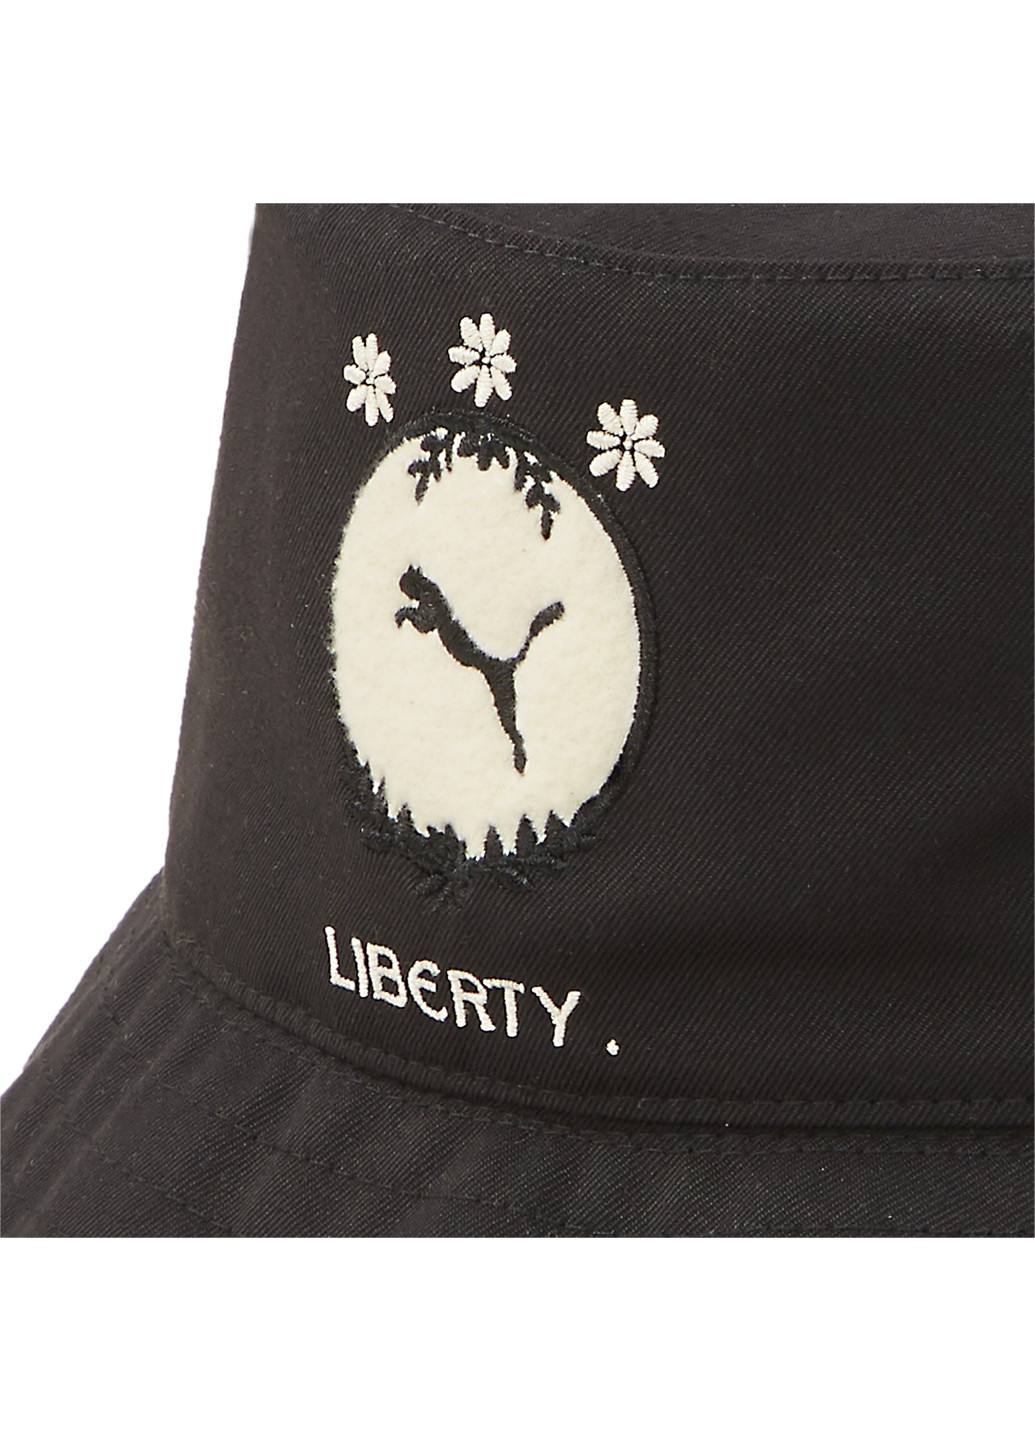 Панама x LIBERTY Women's Bucket Hat Puma однотонная чёрная спортивная полиэстер